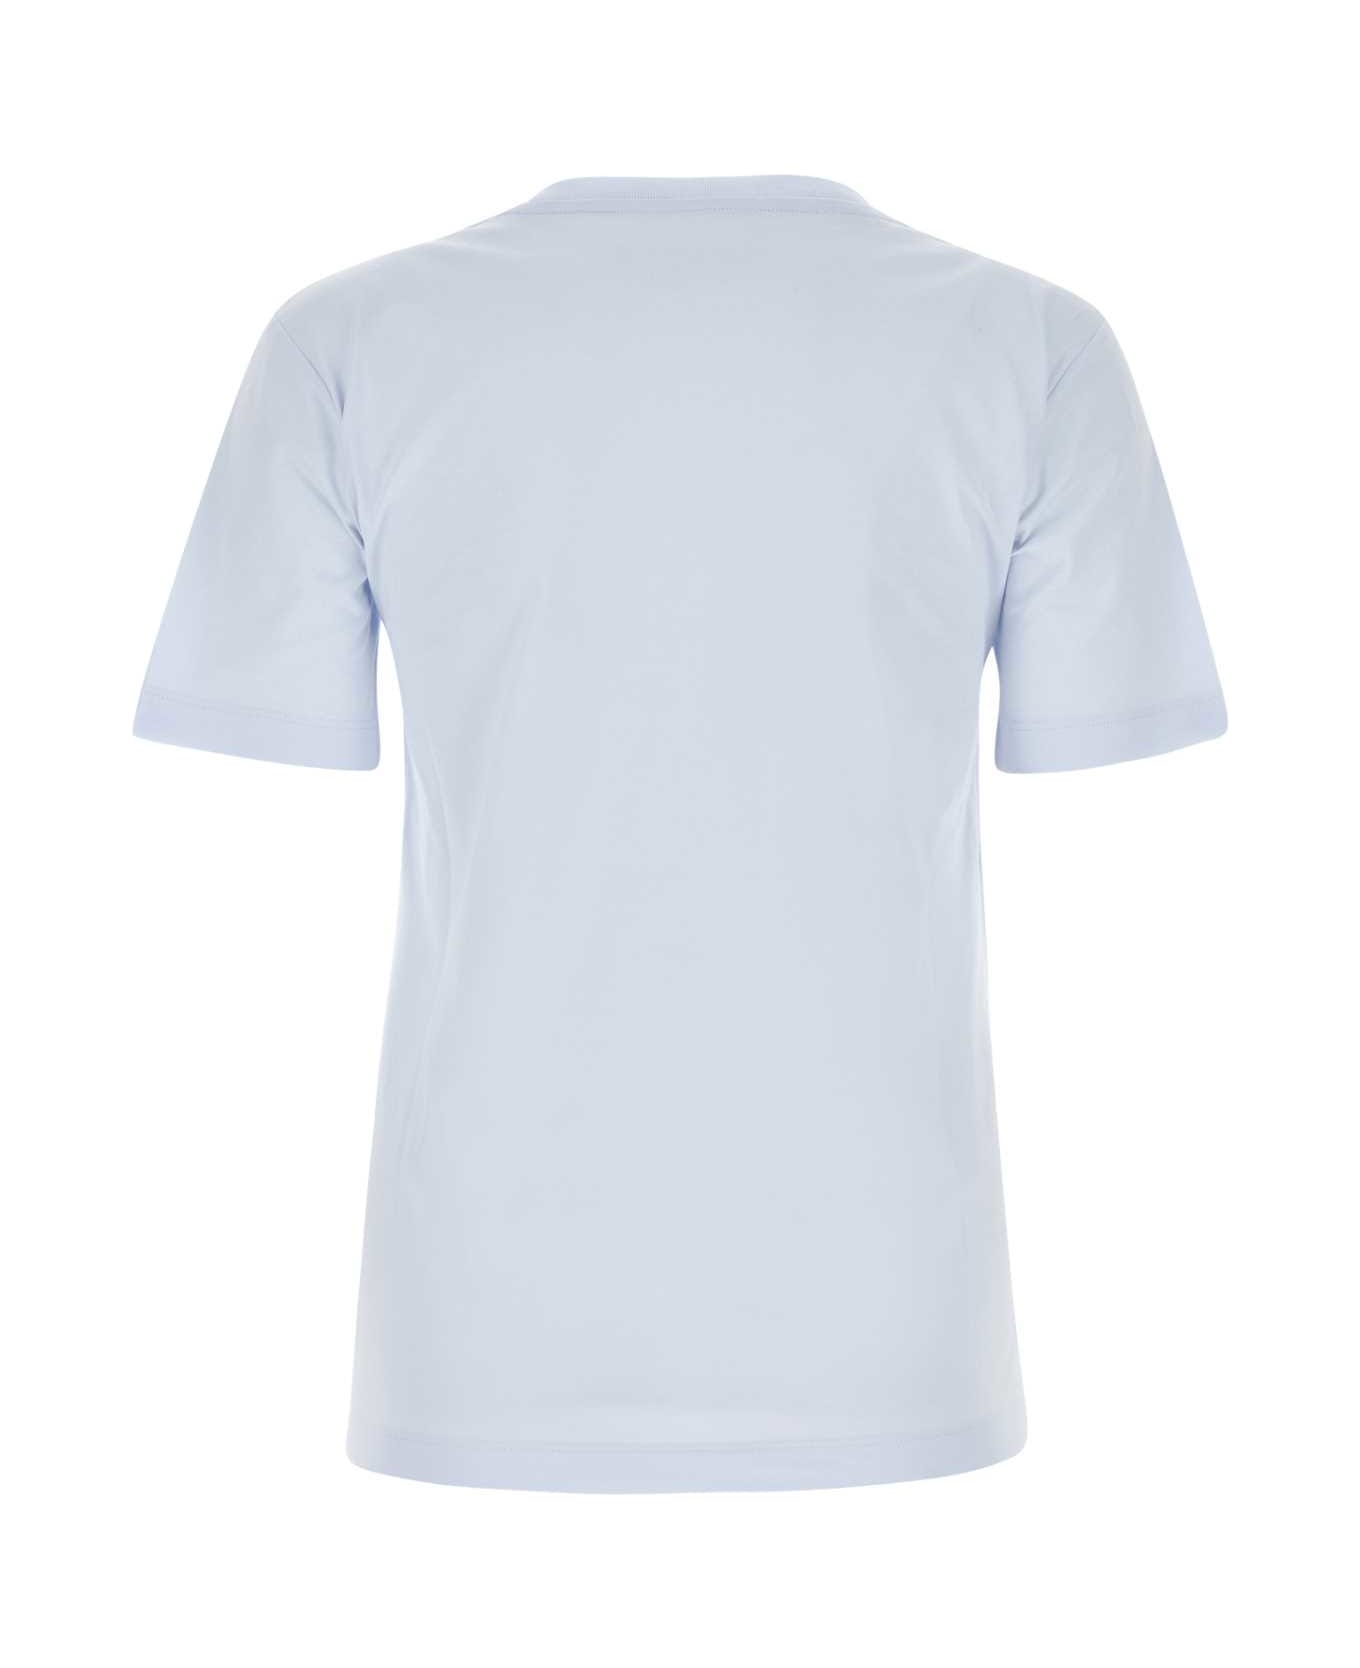 Marni Light Blue T-shirt With Marni Stitching - 00B21